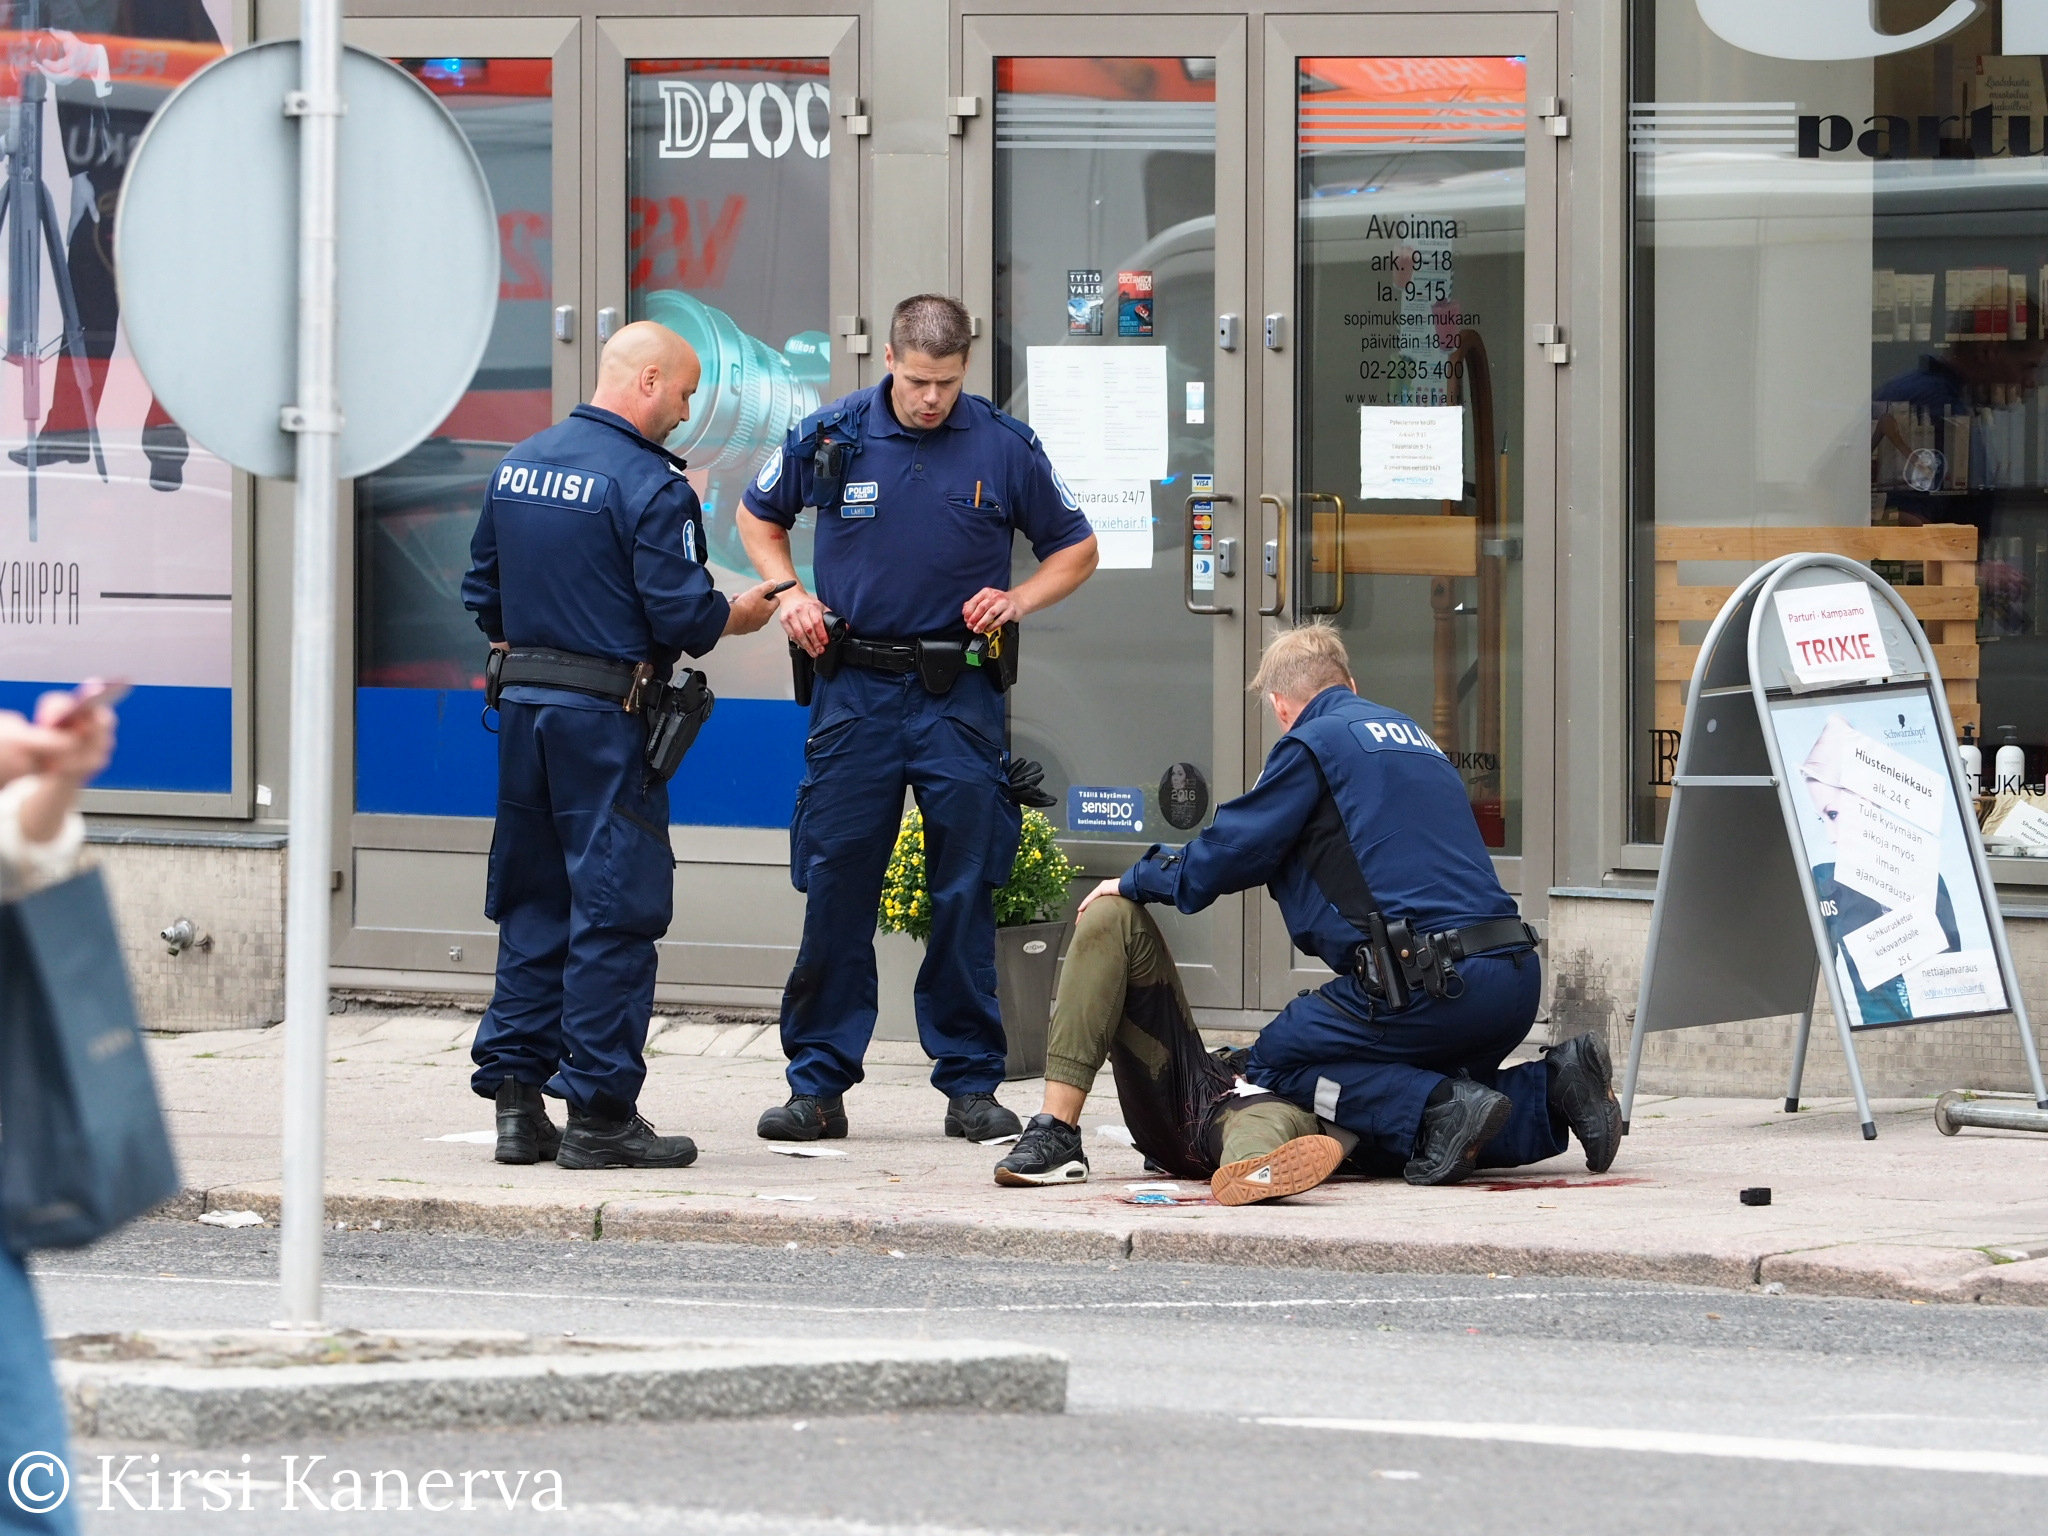 شرطة فنلندا تطلق النار على المشتبه به فى تنفيذ حادث الطعن